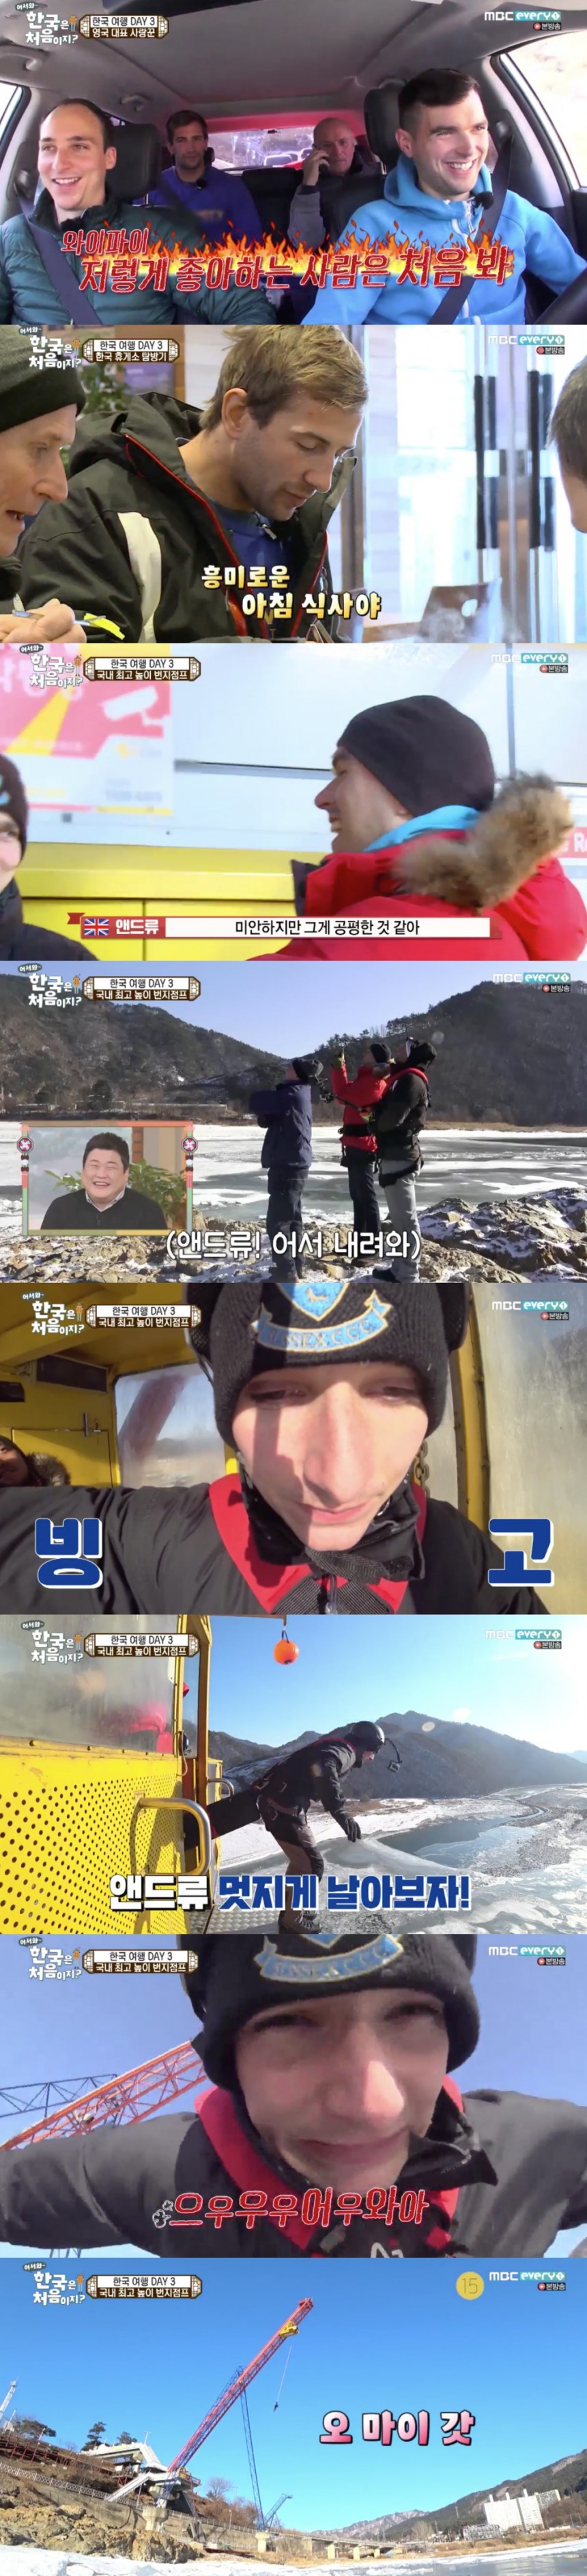 MBCevery1 ‘어서와, 한국은 처음이지’ 방송 캡쳐 